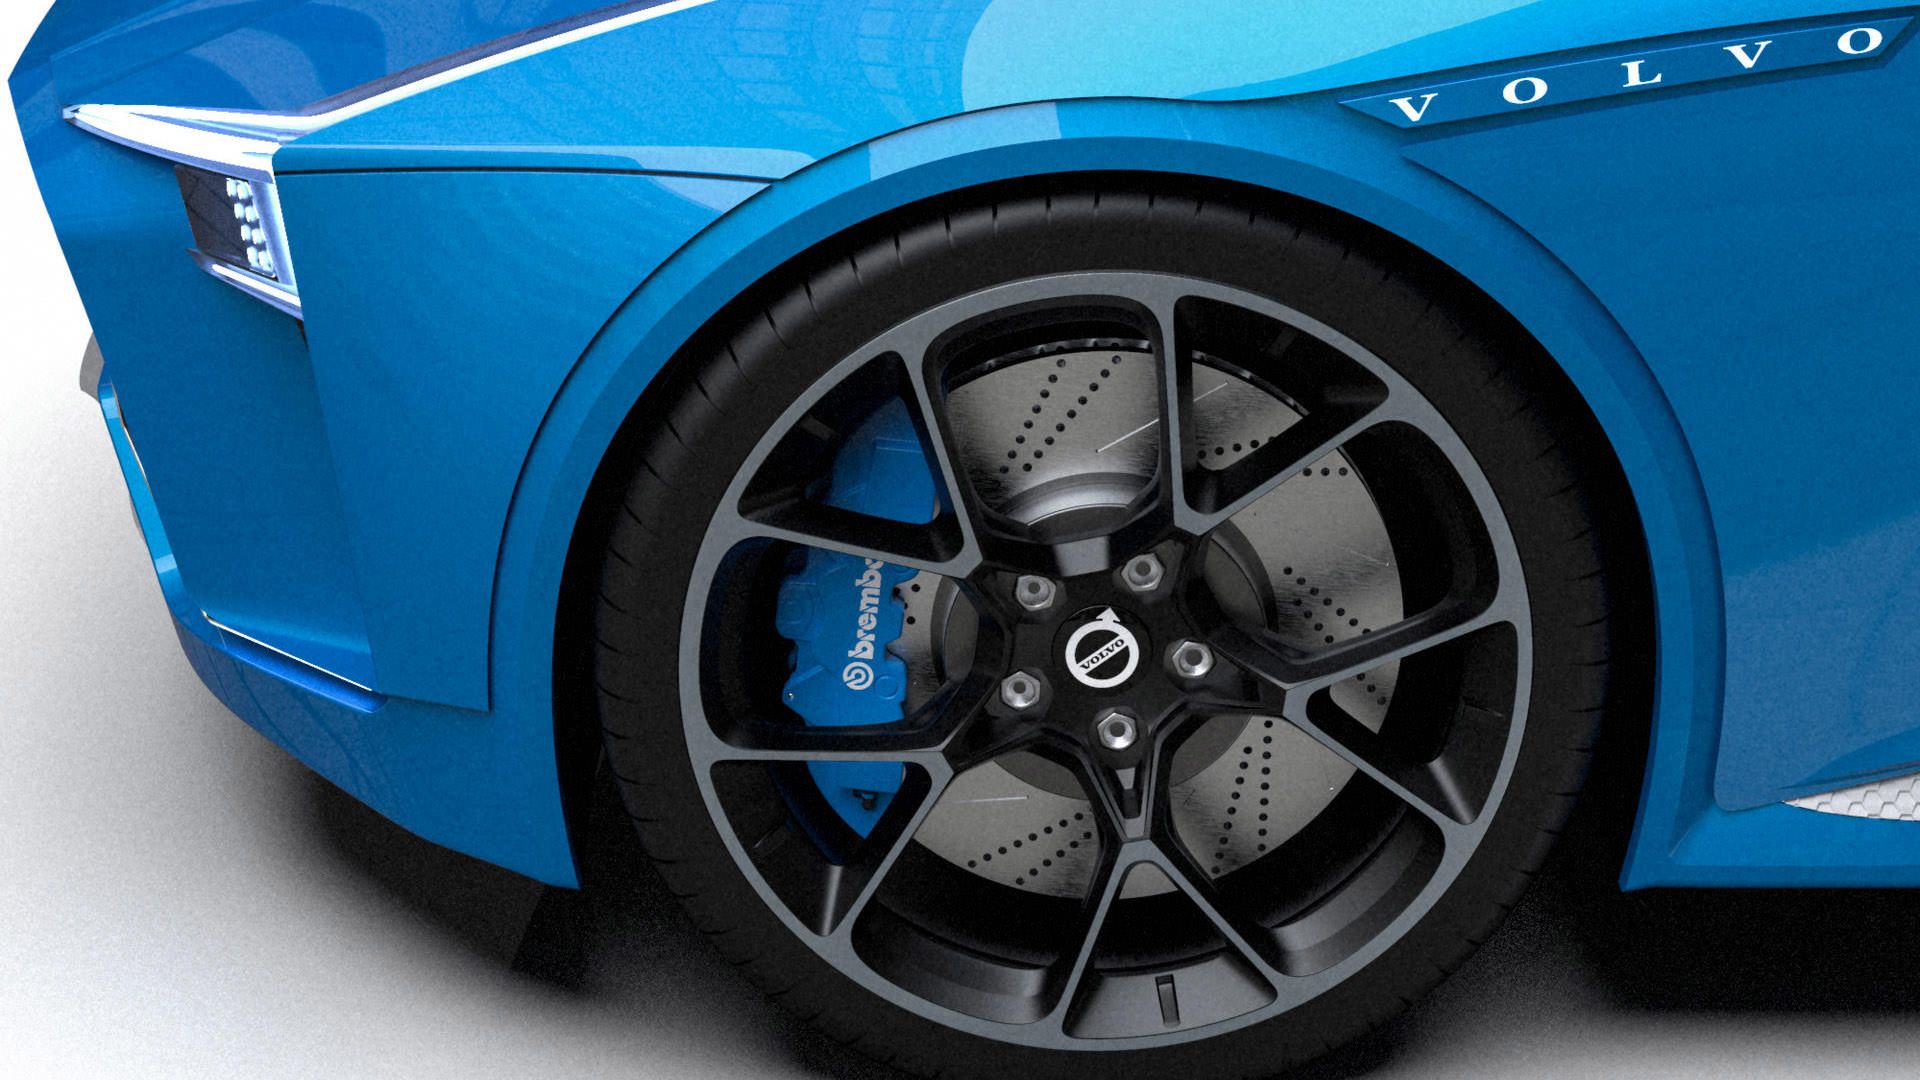 رینگ و چرخ خودروی مفهومی ولوو کریگر / Volvo Krigare آبی رنگ